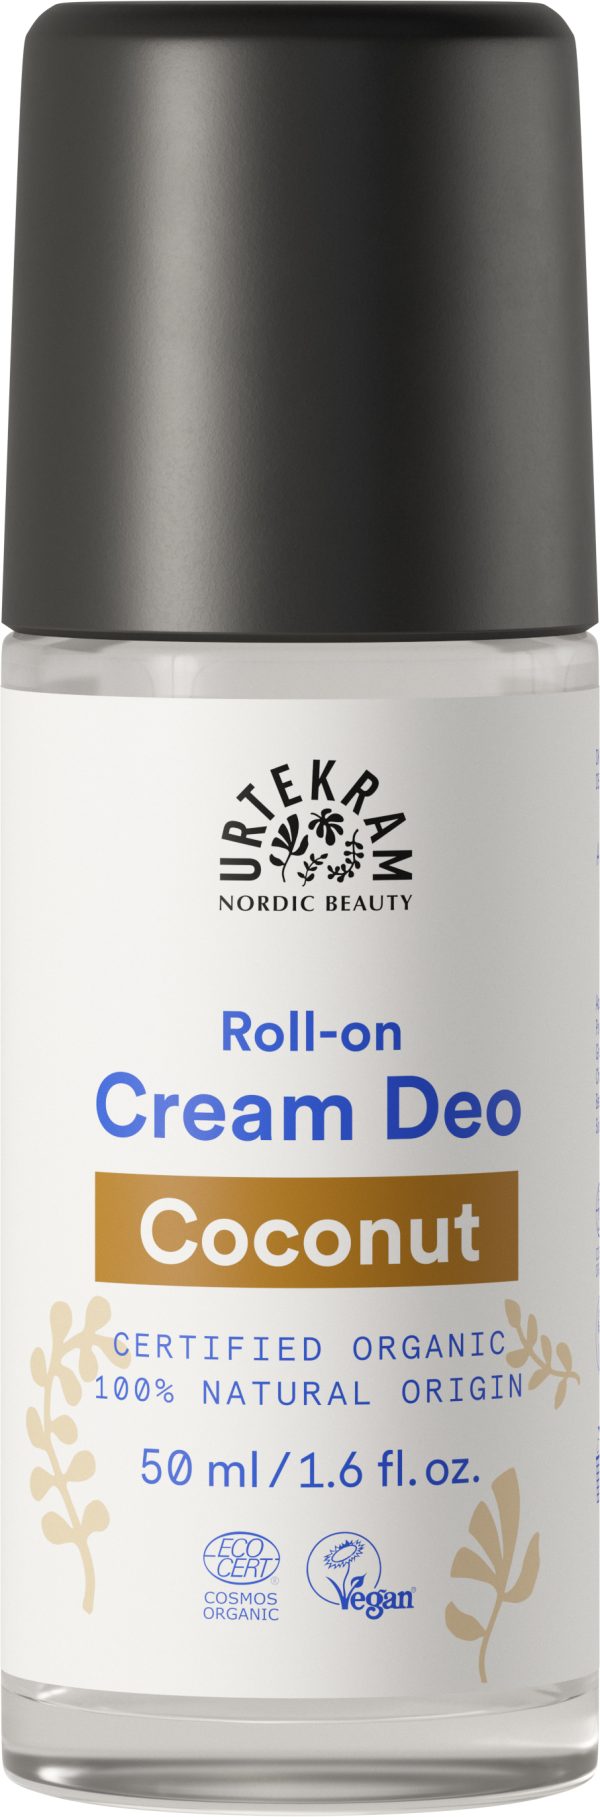 Urtekram - Déo crème roll-on noix de coco BIO 50 ml